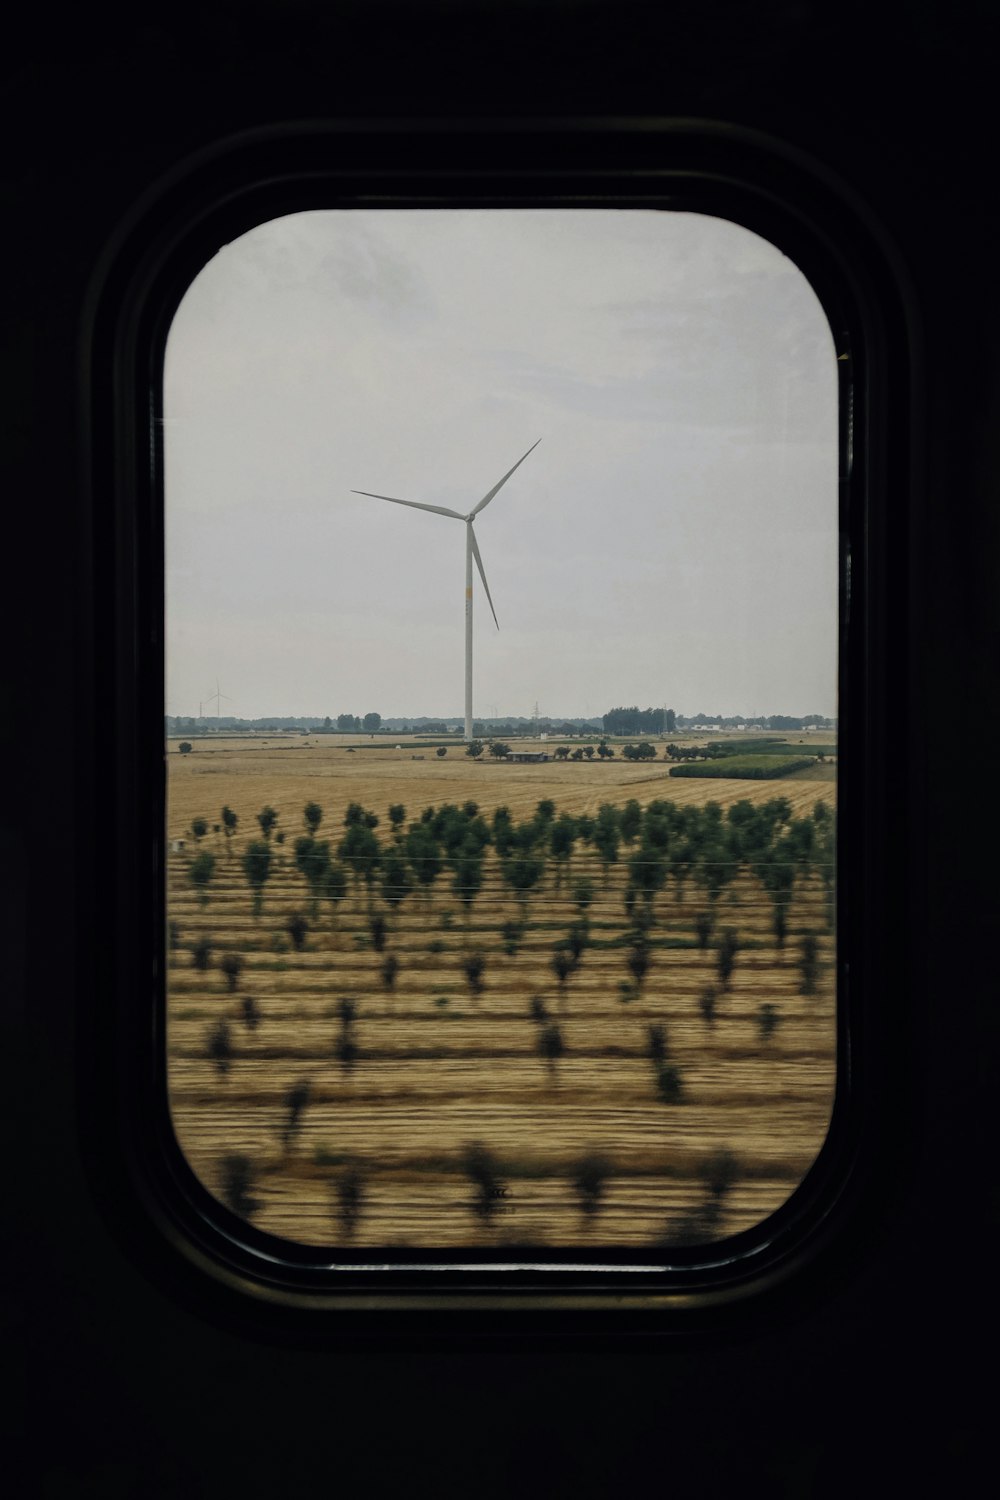 Una vista de una turbina eólica a través de una ventana